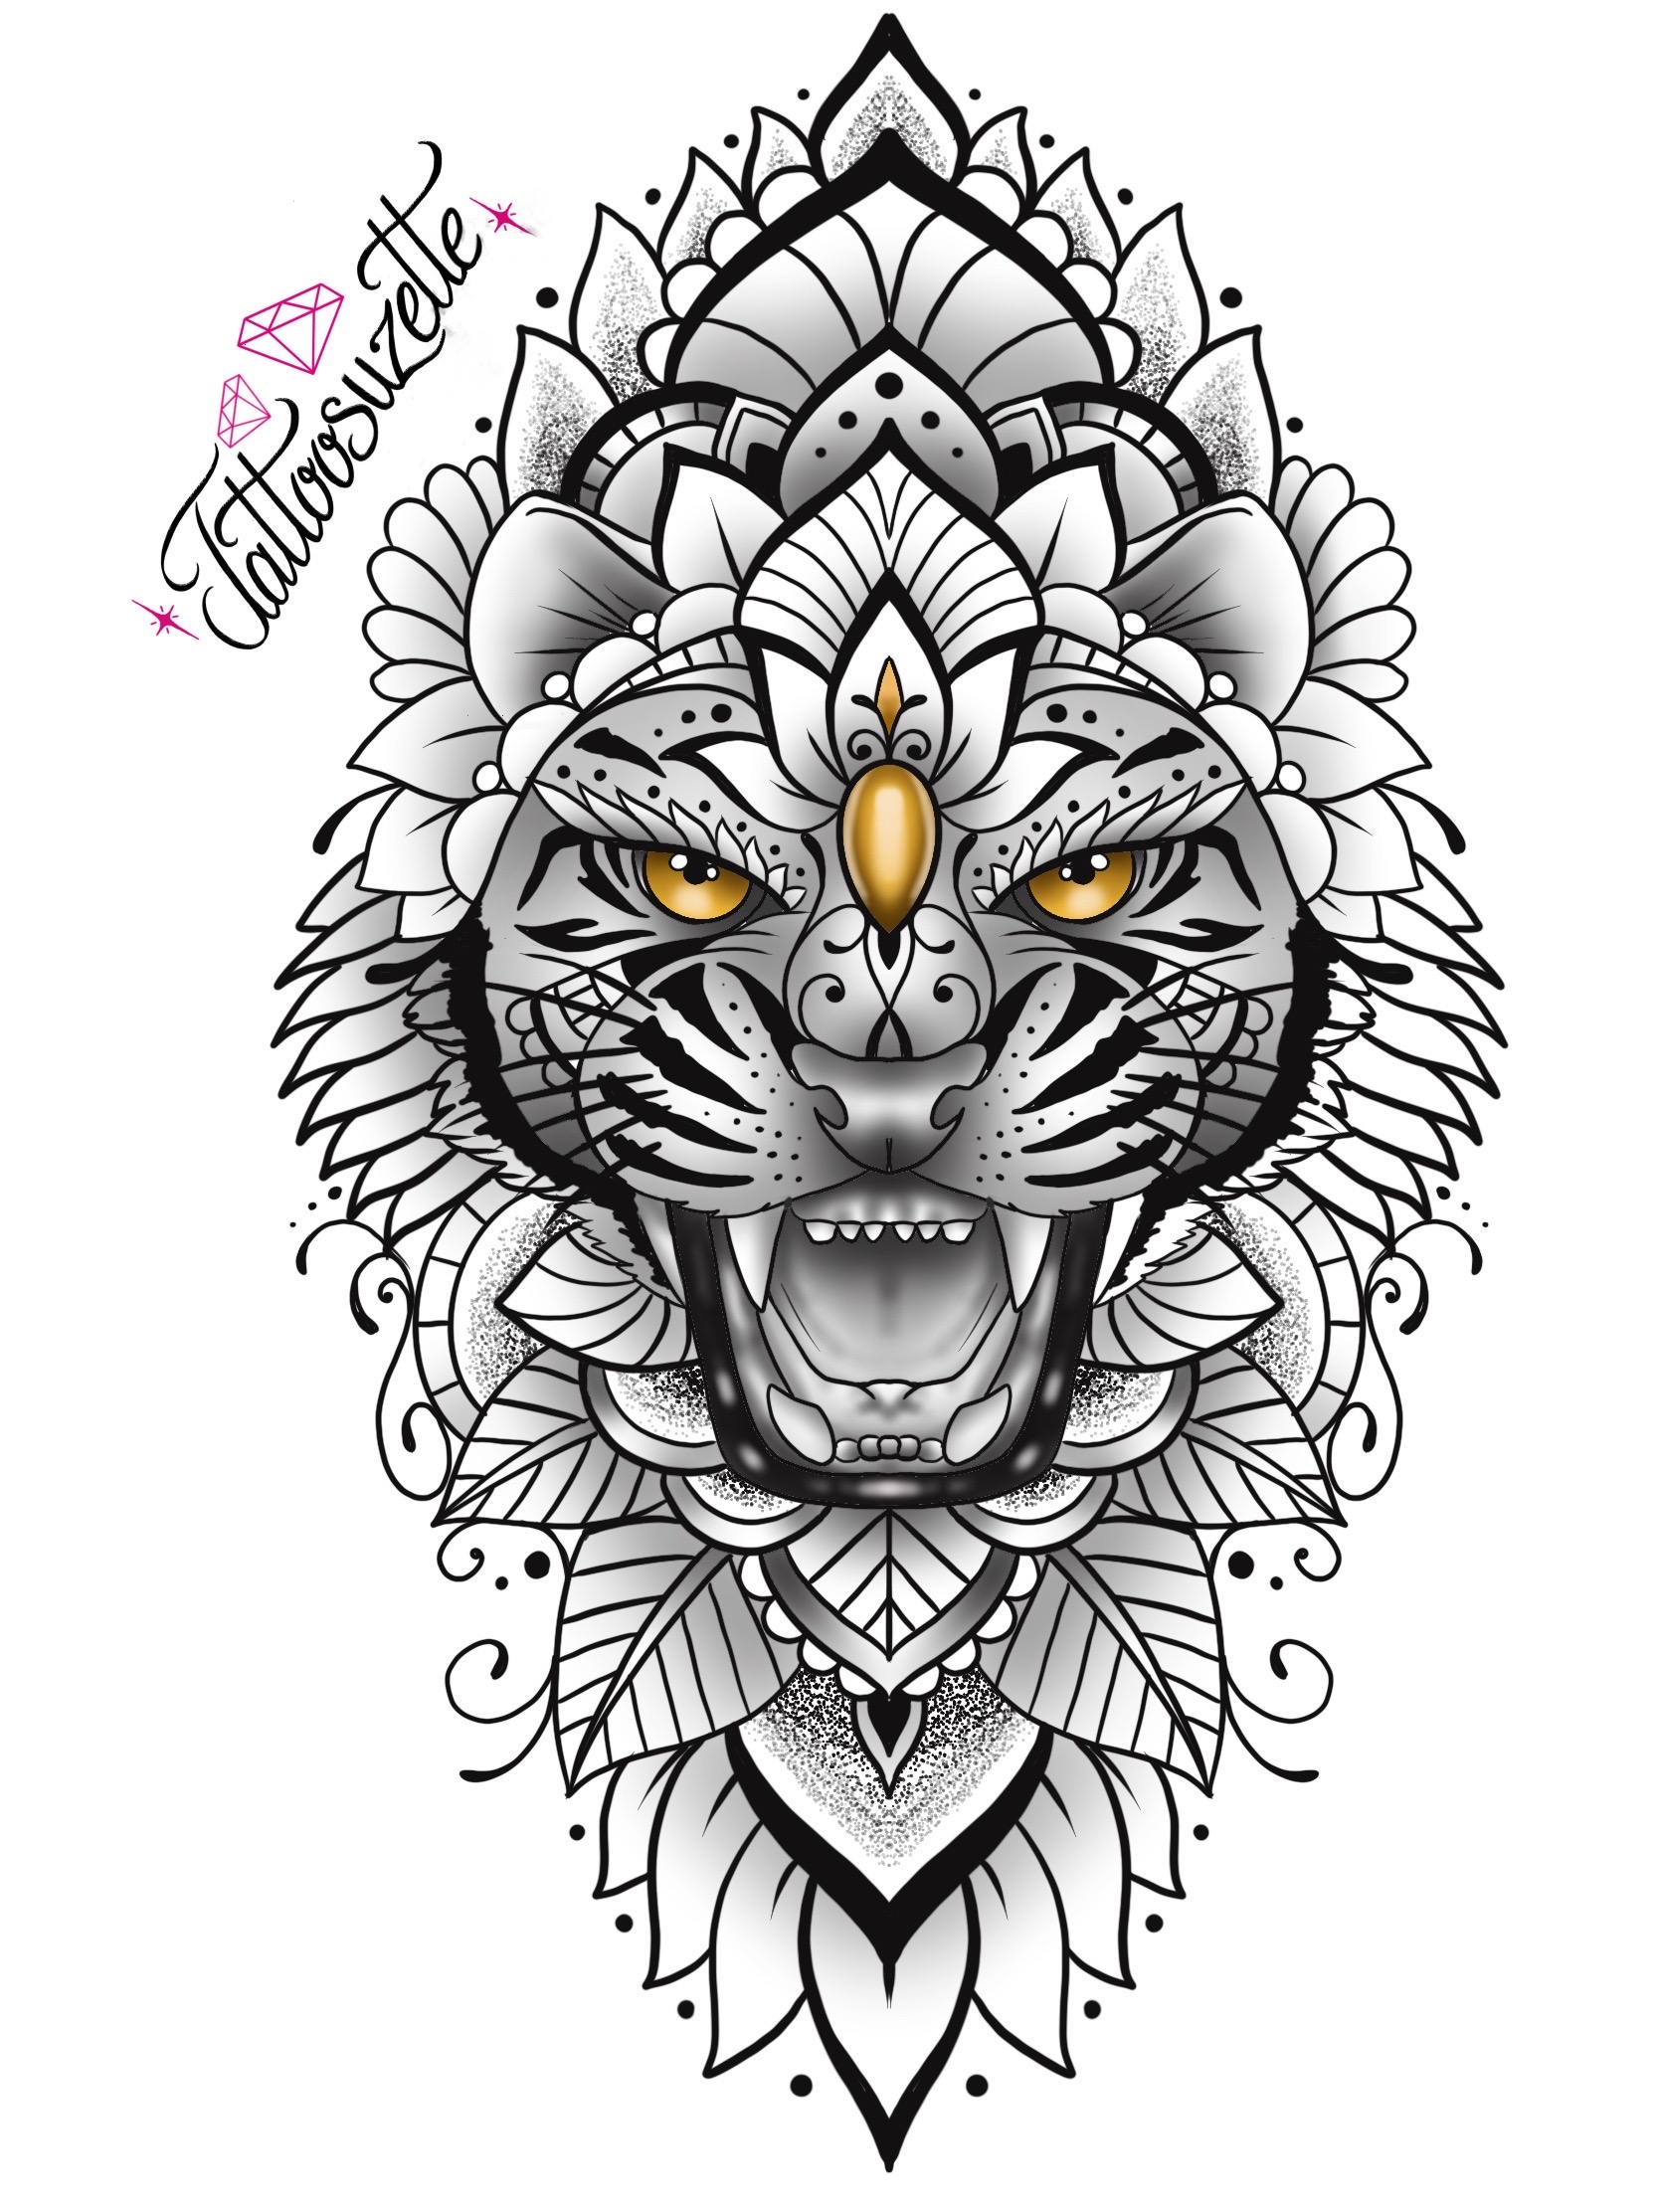 Tiger tattoo design by tattoosuzette on DeviantArt